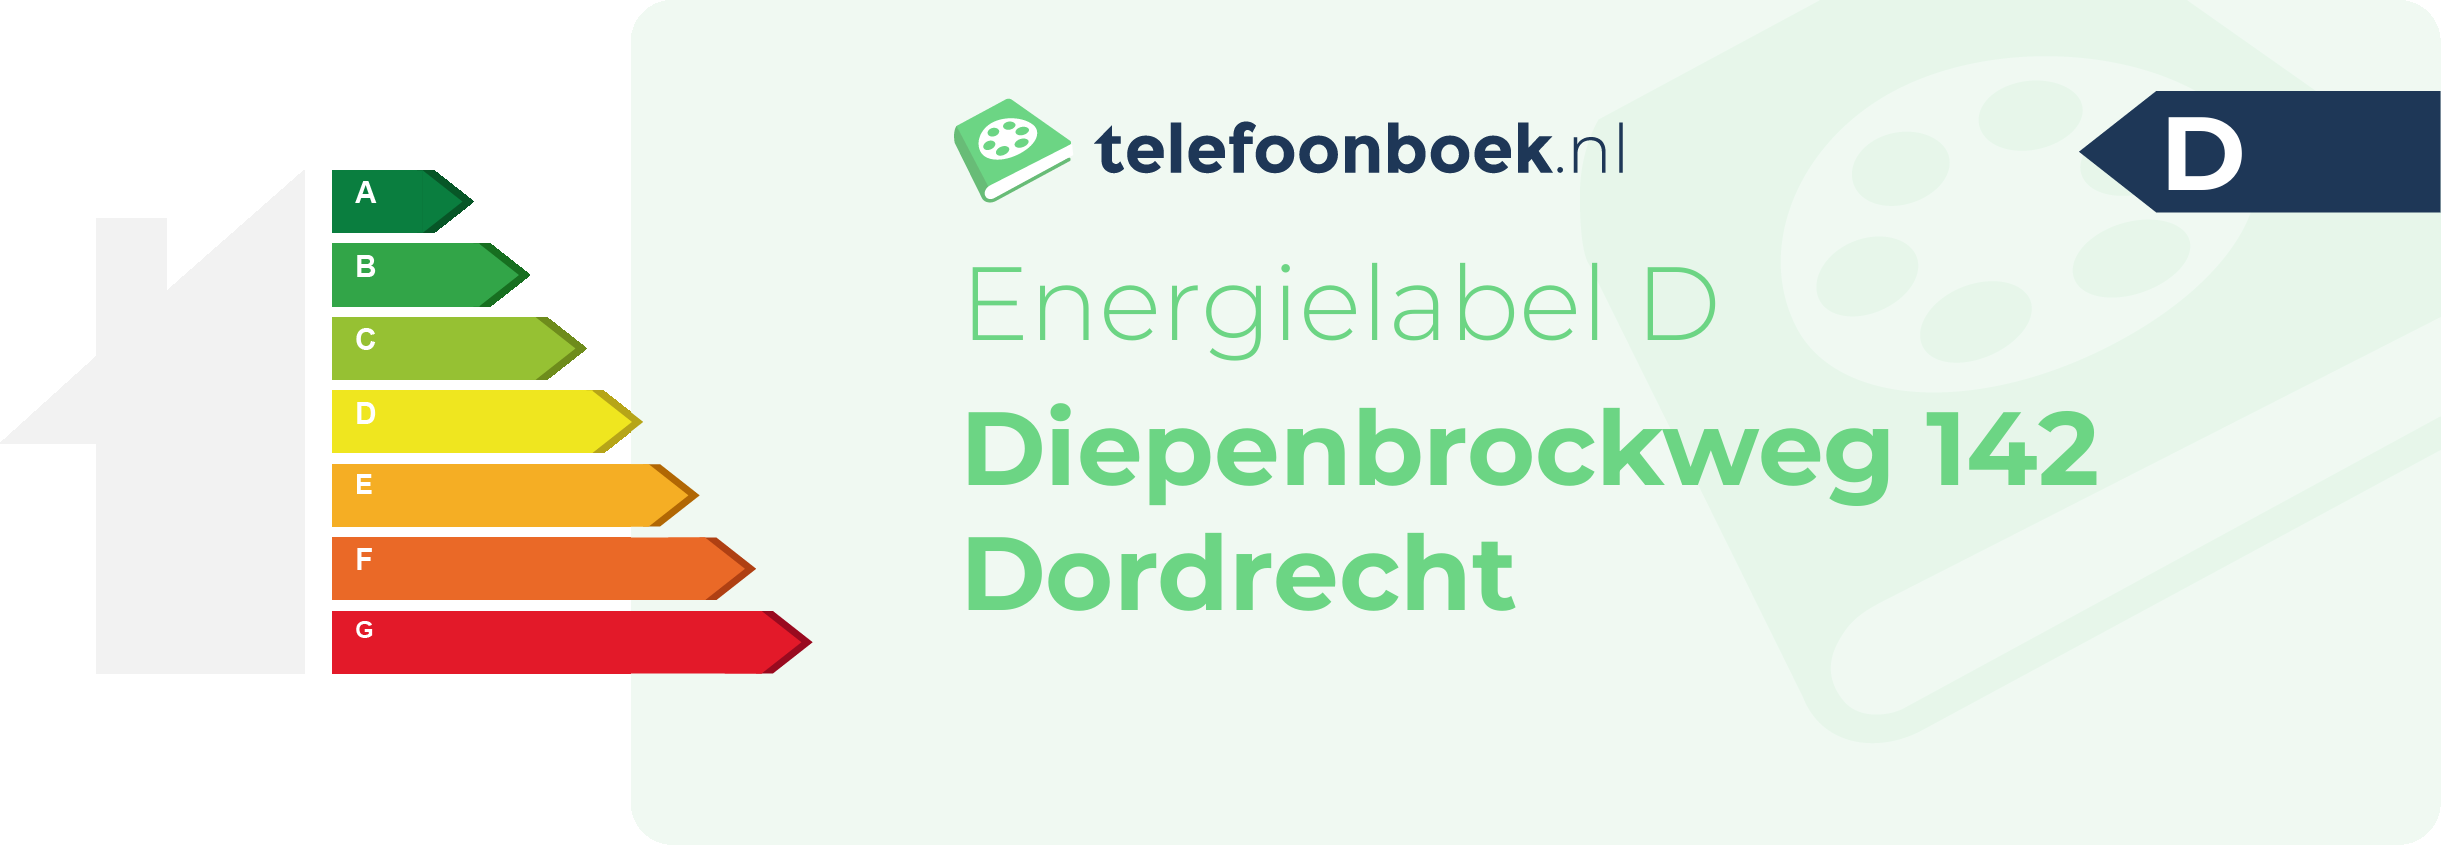 Energielabel Diepenbrockweg 142 Dordrecht